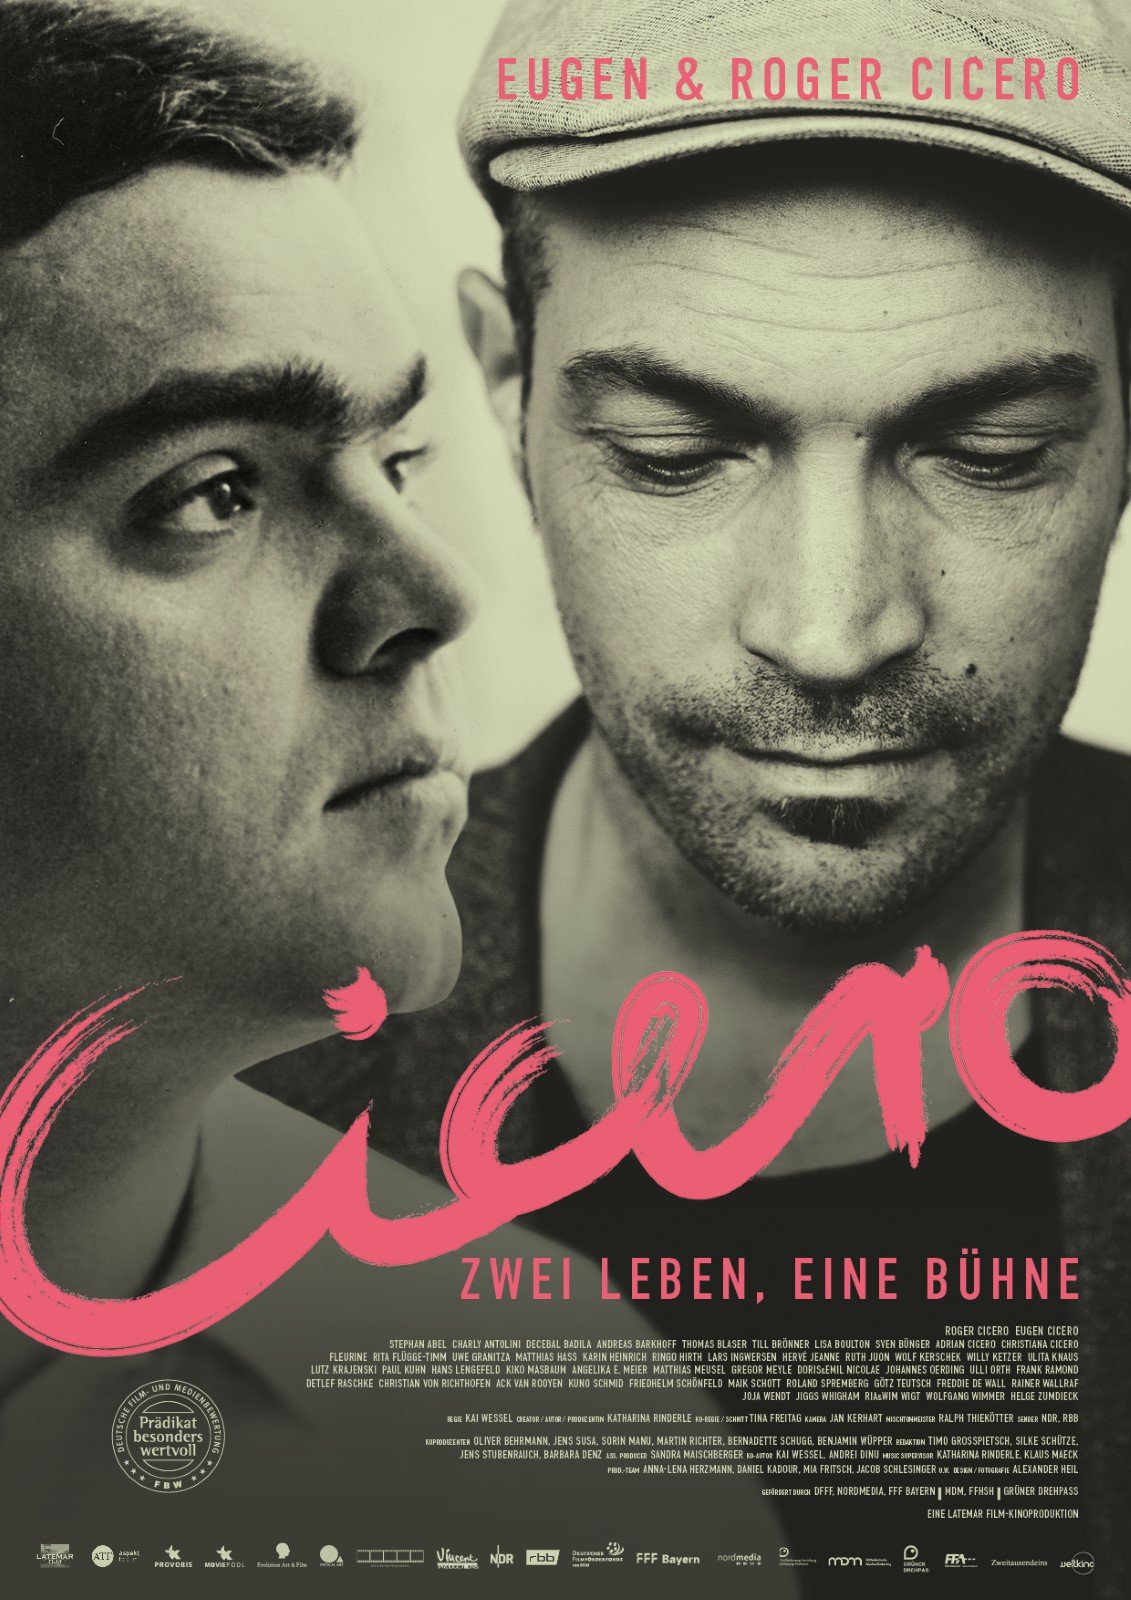 Cicero - Zwei Leben, eine Bühne - Roger Cicero, Eugen Cicero, Filmplakat , Verrat mir deine Sprache, 